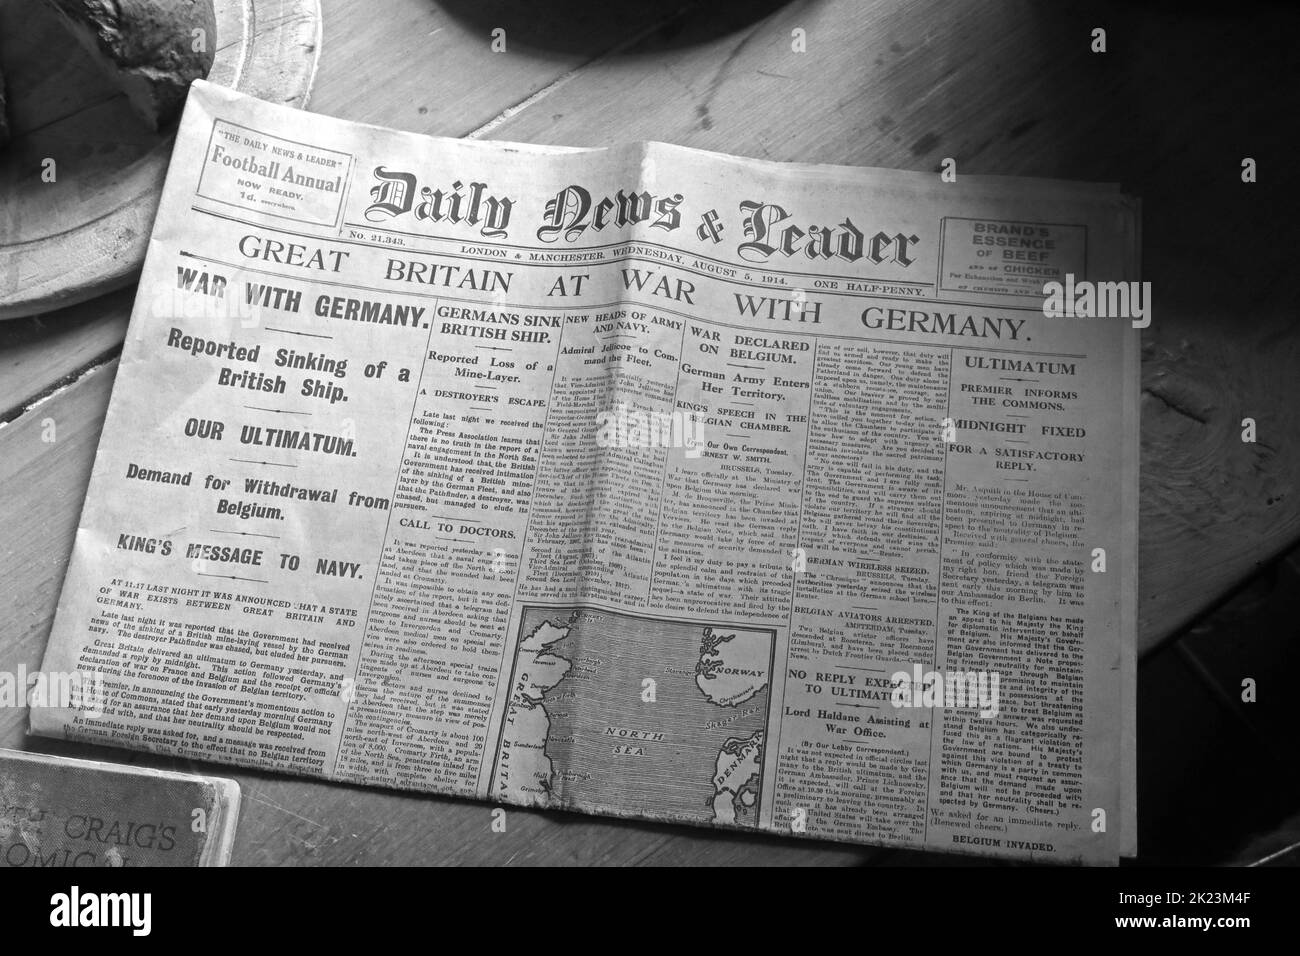 Daily News and Leader, 1914 Headline,Großbritannien im Krieg mit Deutschland, auf einem Küchentisch Stockfoto